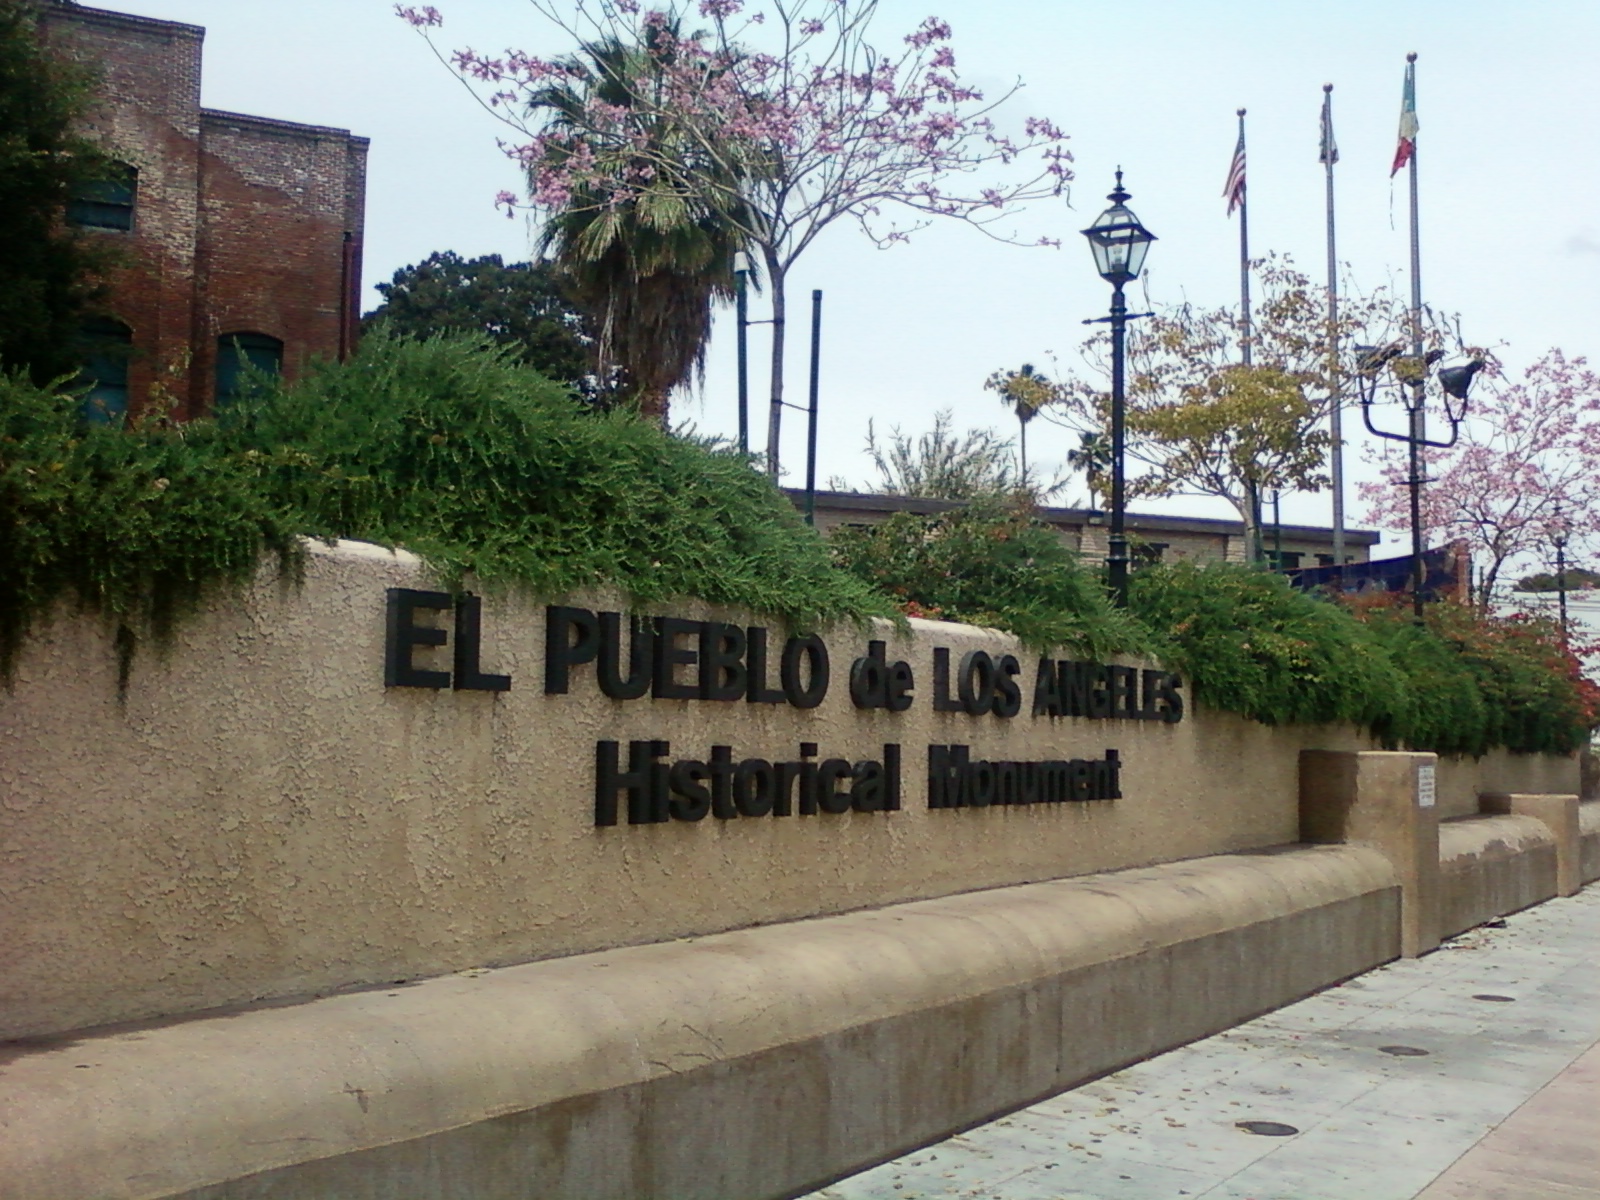 El Pueblo de Los Angeles Historical Monument entrance sign on wall.